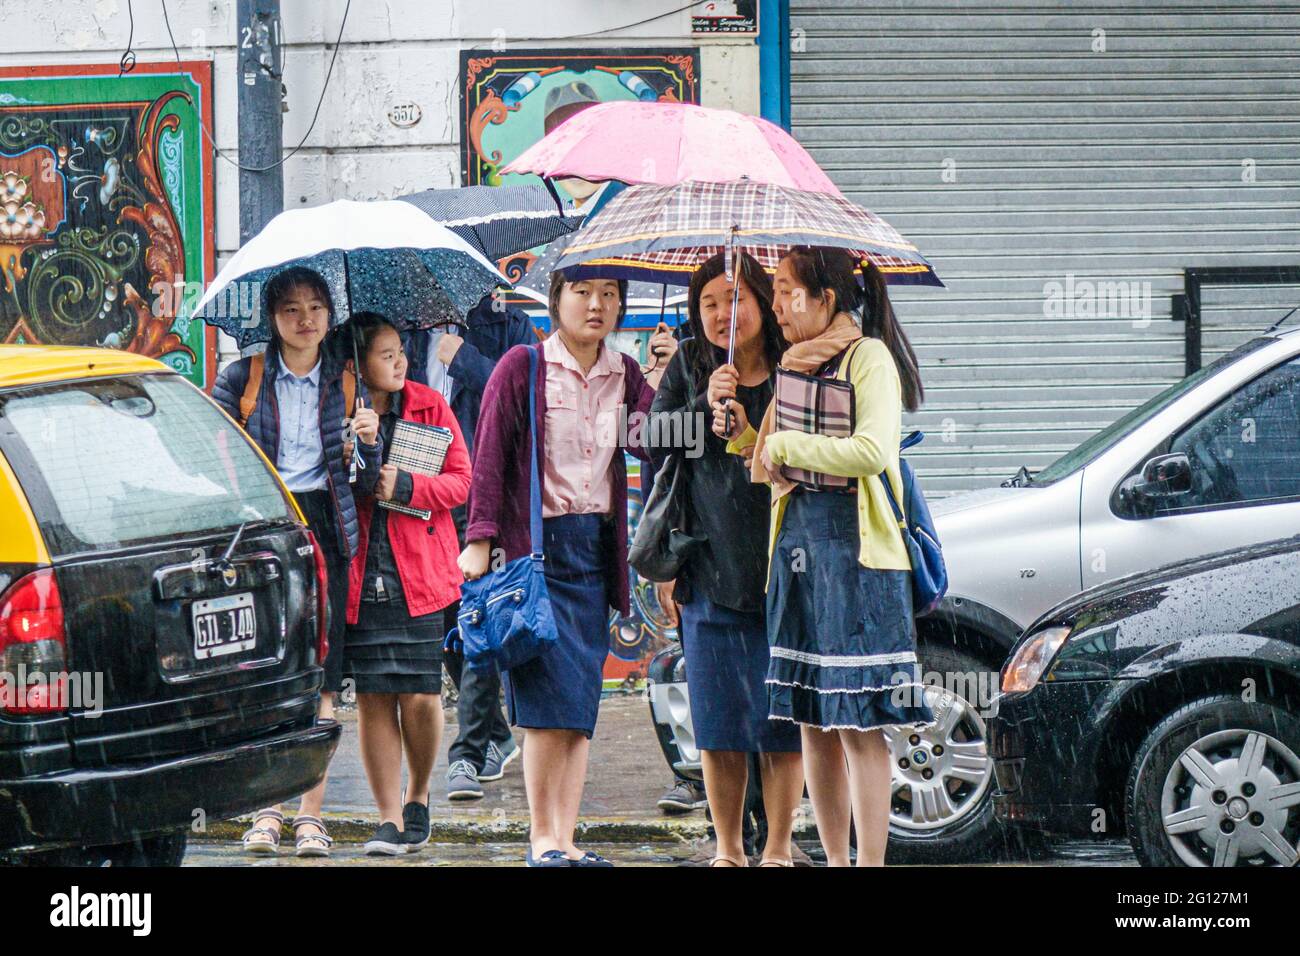 Argentina Buenos Aires San Telmo centro histórico grupo de mujeres asiáticas turistas sosteniendo paraguas cruzando la calle lluvia lloviendo día lluvioso Foto de stock